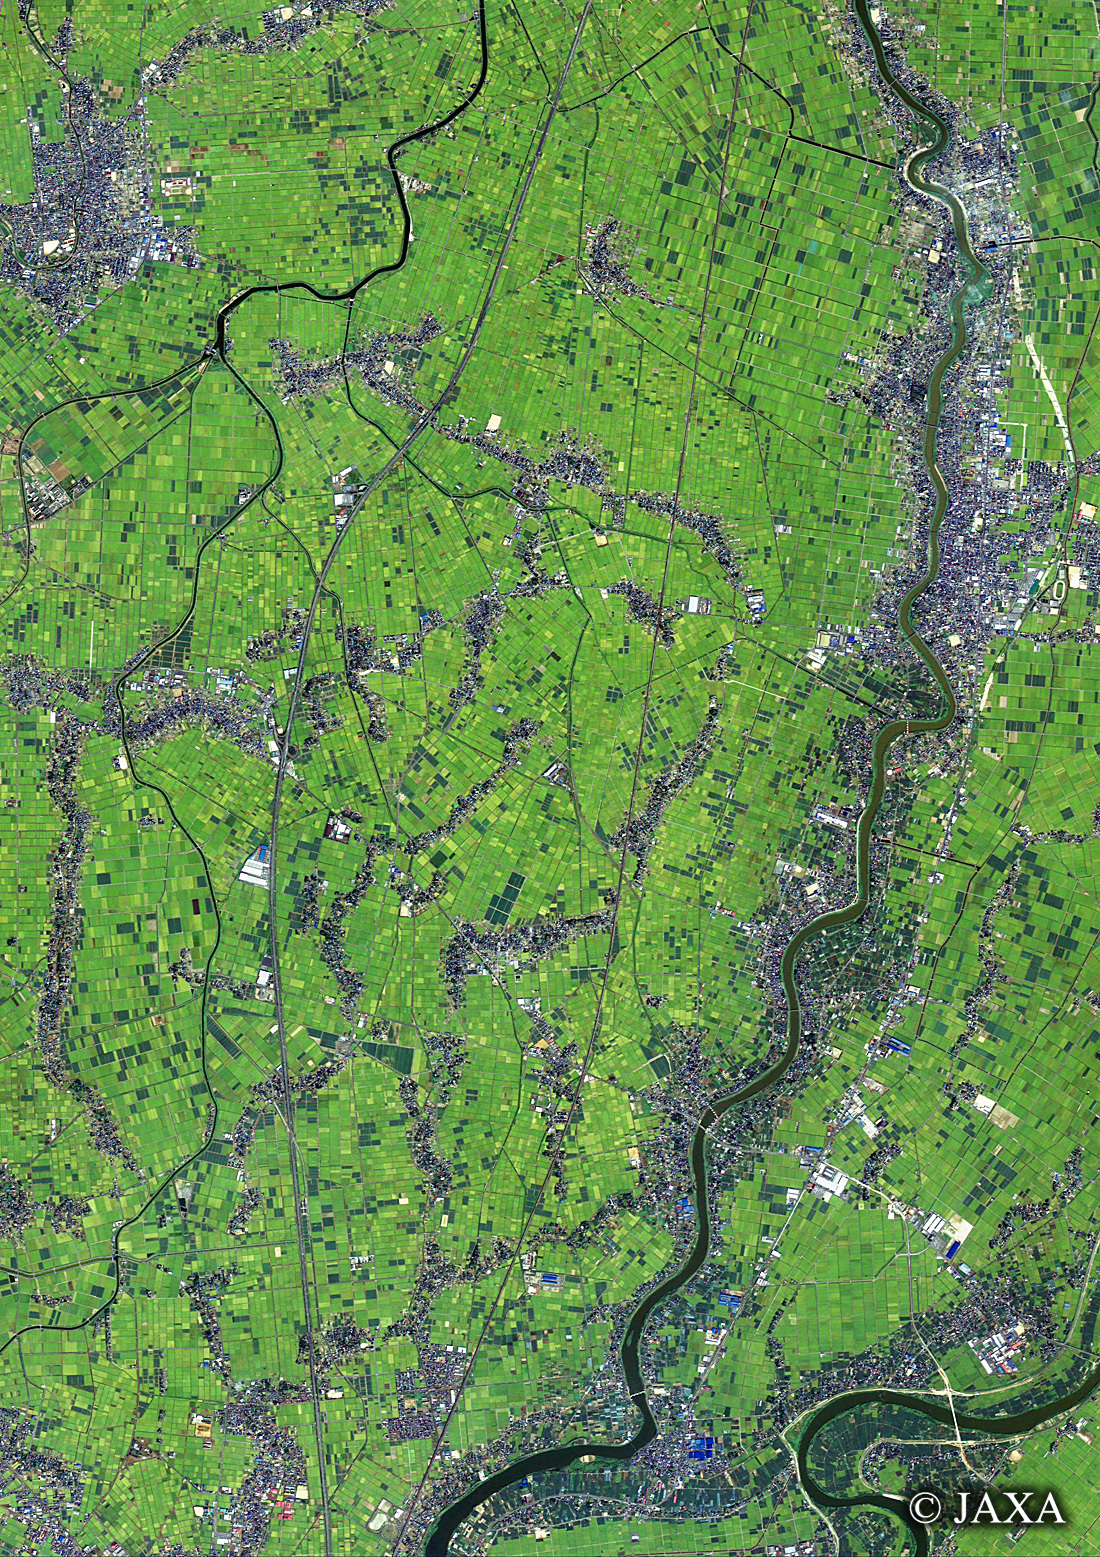 だいちから見た日本の都市 新潟市西蒲区周辺:衛星画像